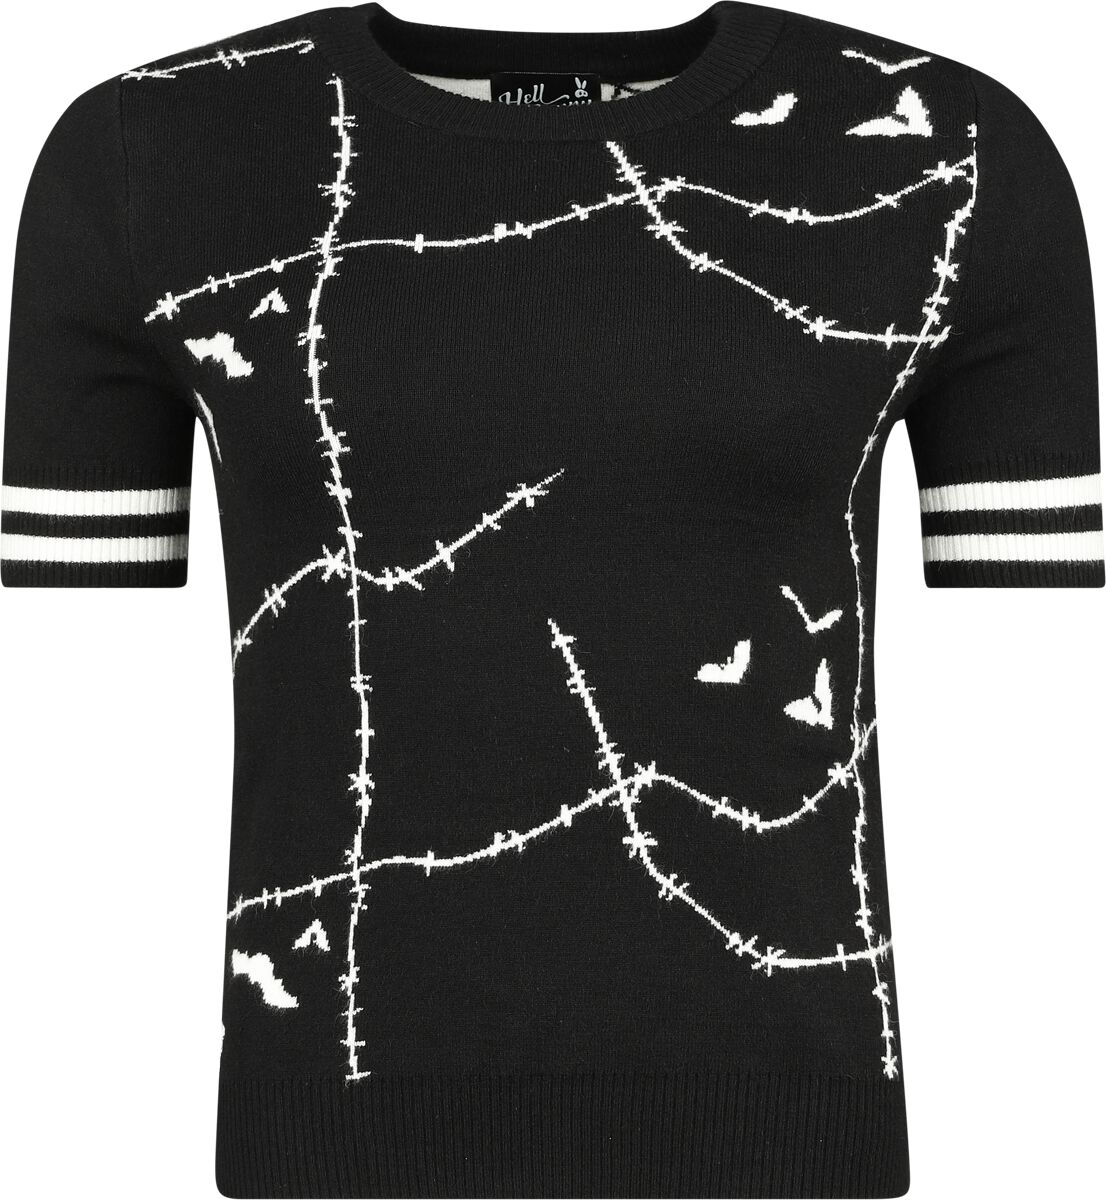 Hell Bunny Stitches Top T-Shirt schwarz weiß in XL